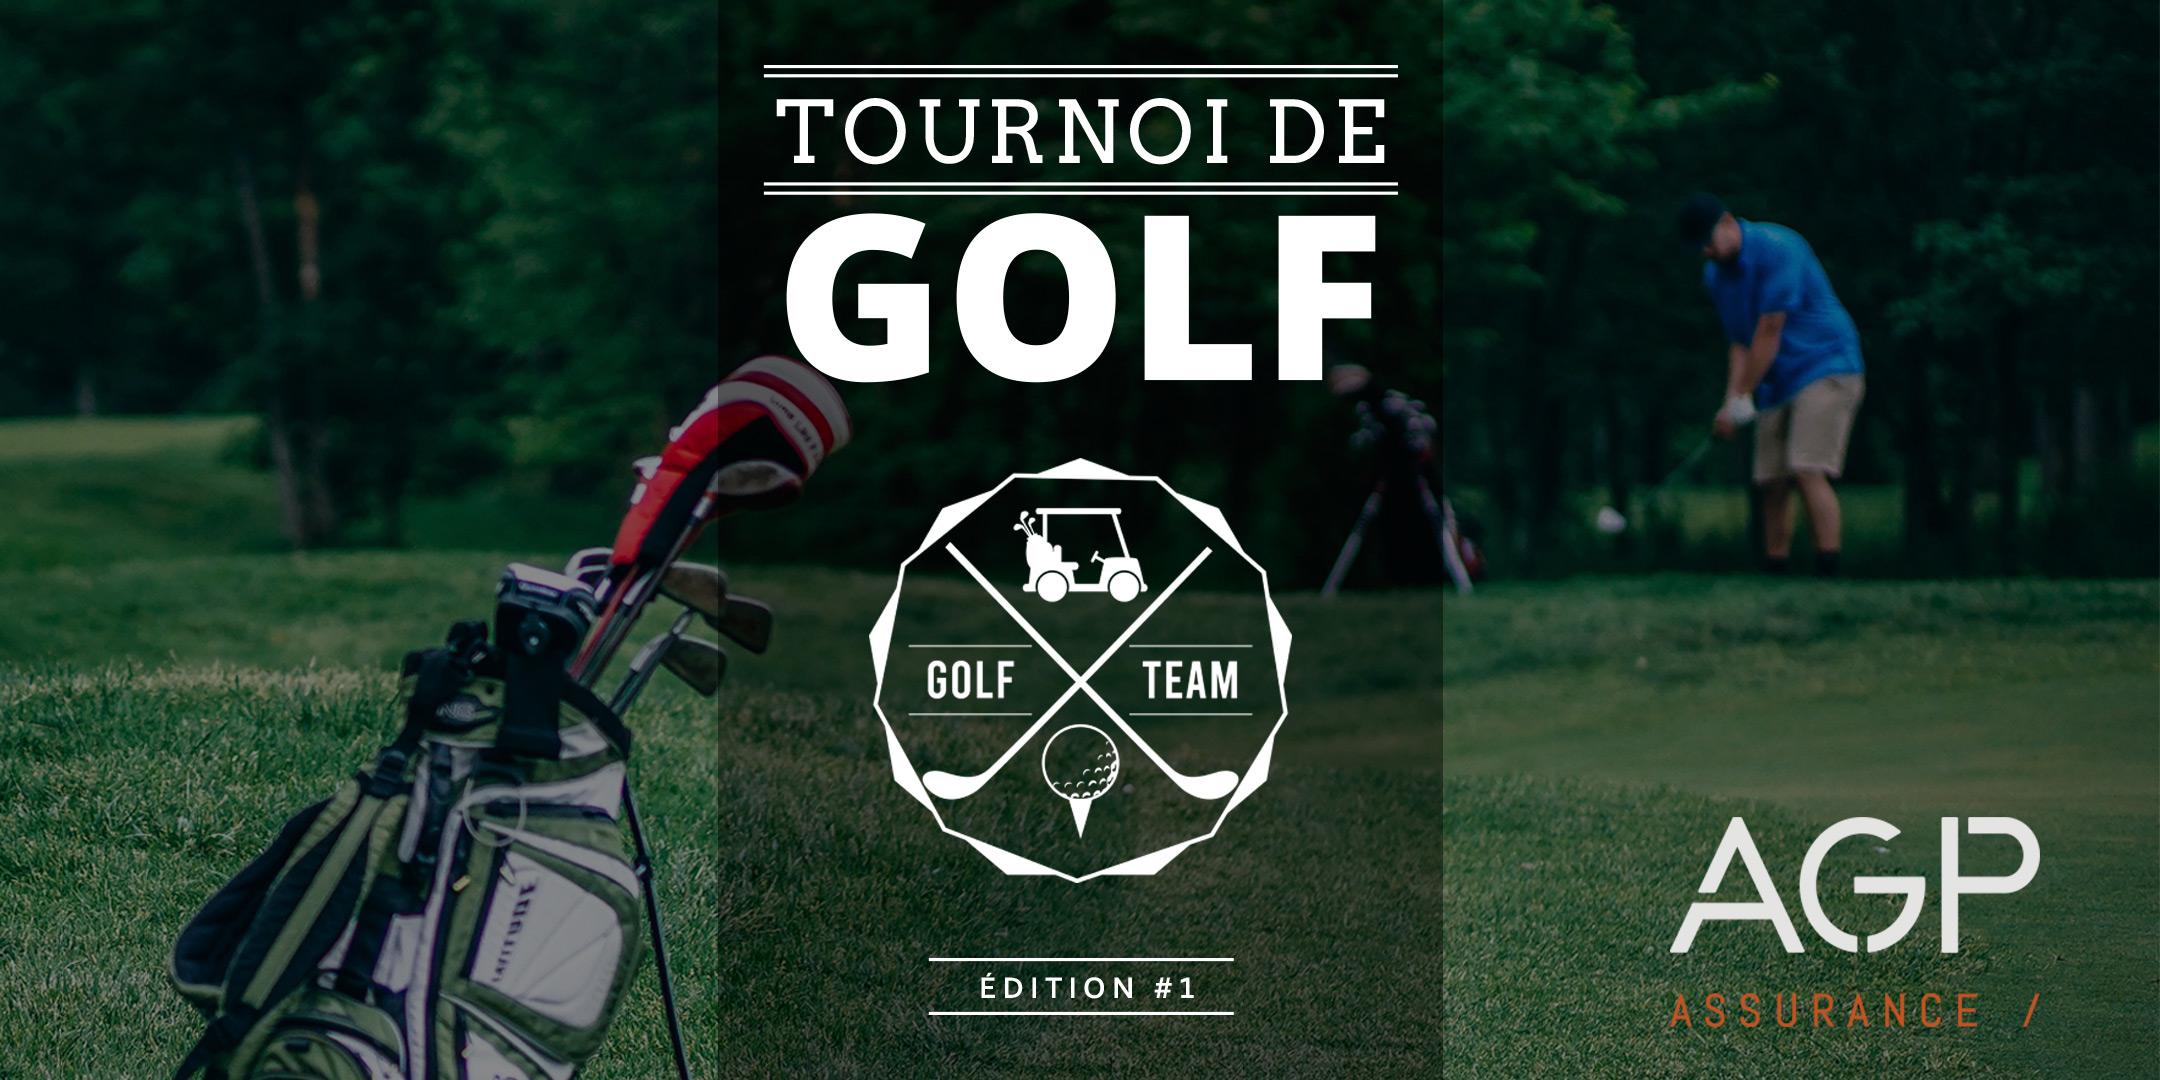 Tournoi de golf AGP 2019 au profit de la fondation Laurent Duvernay-Tardif